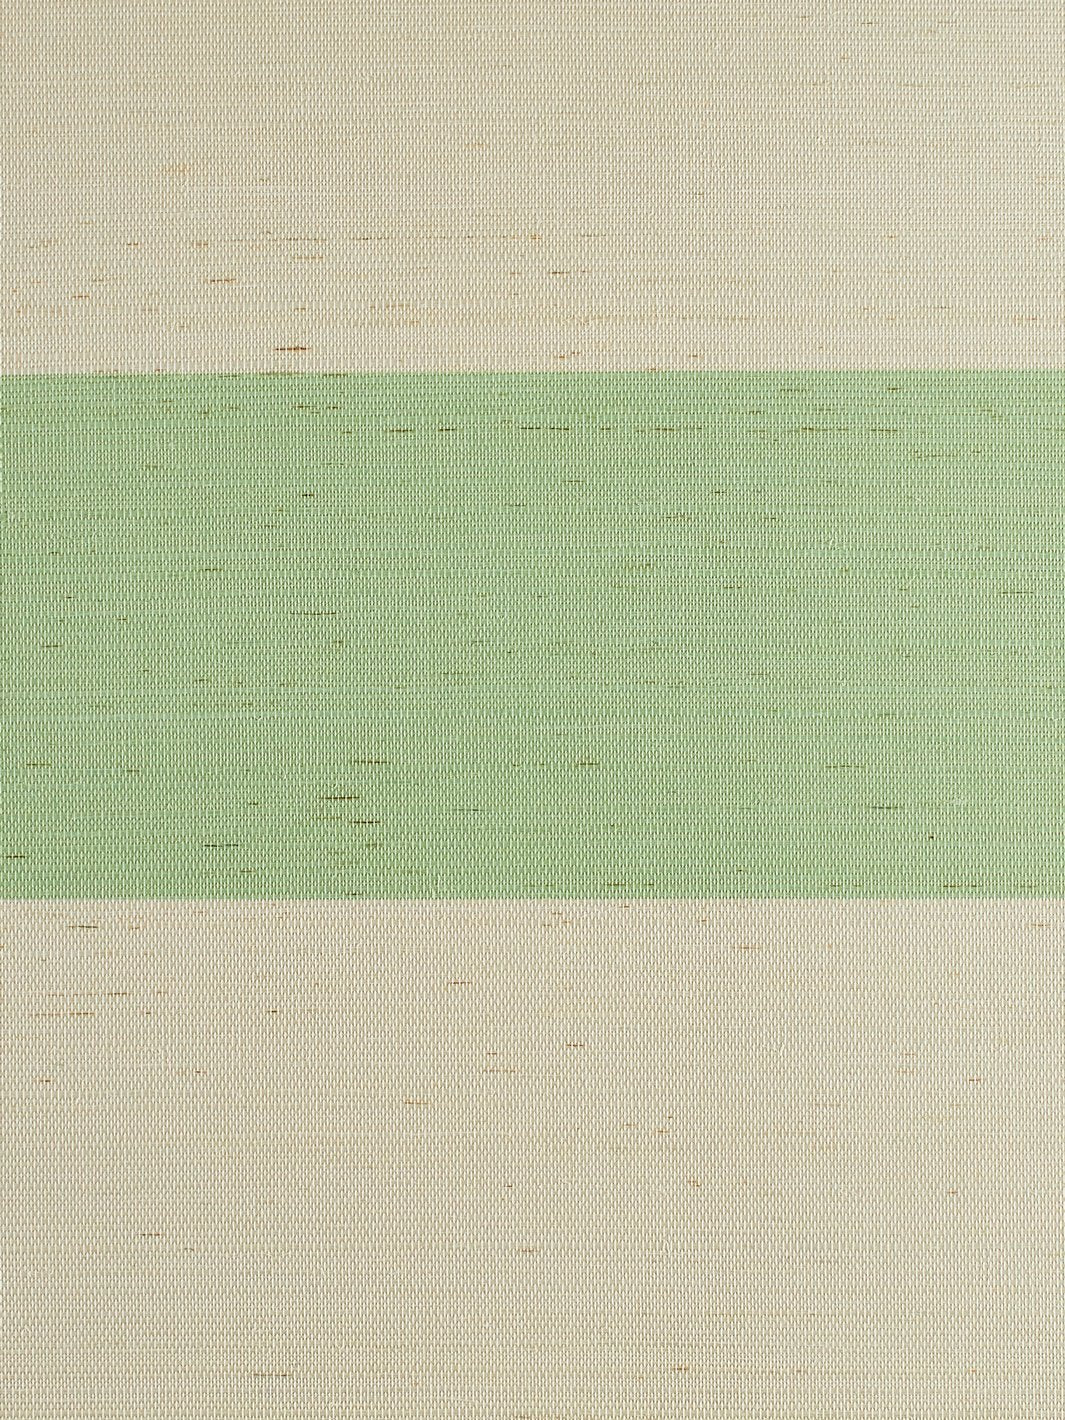 'Wide Stripe' Grasscloth' Wallpaper by Wallshoppe - Spring Green